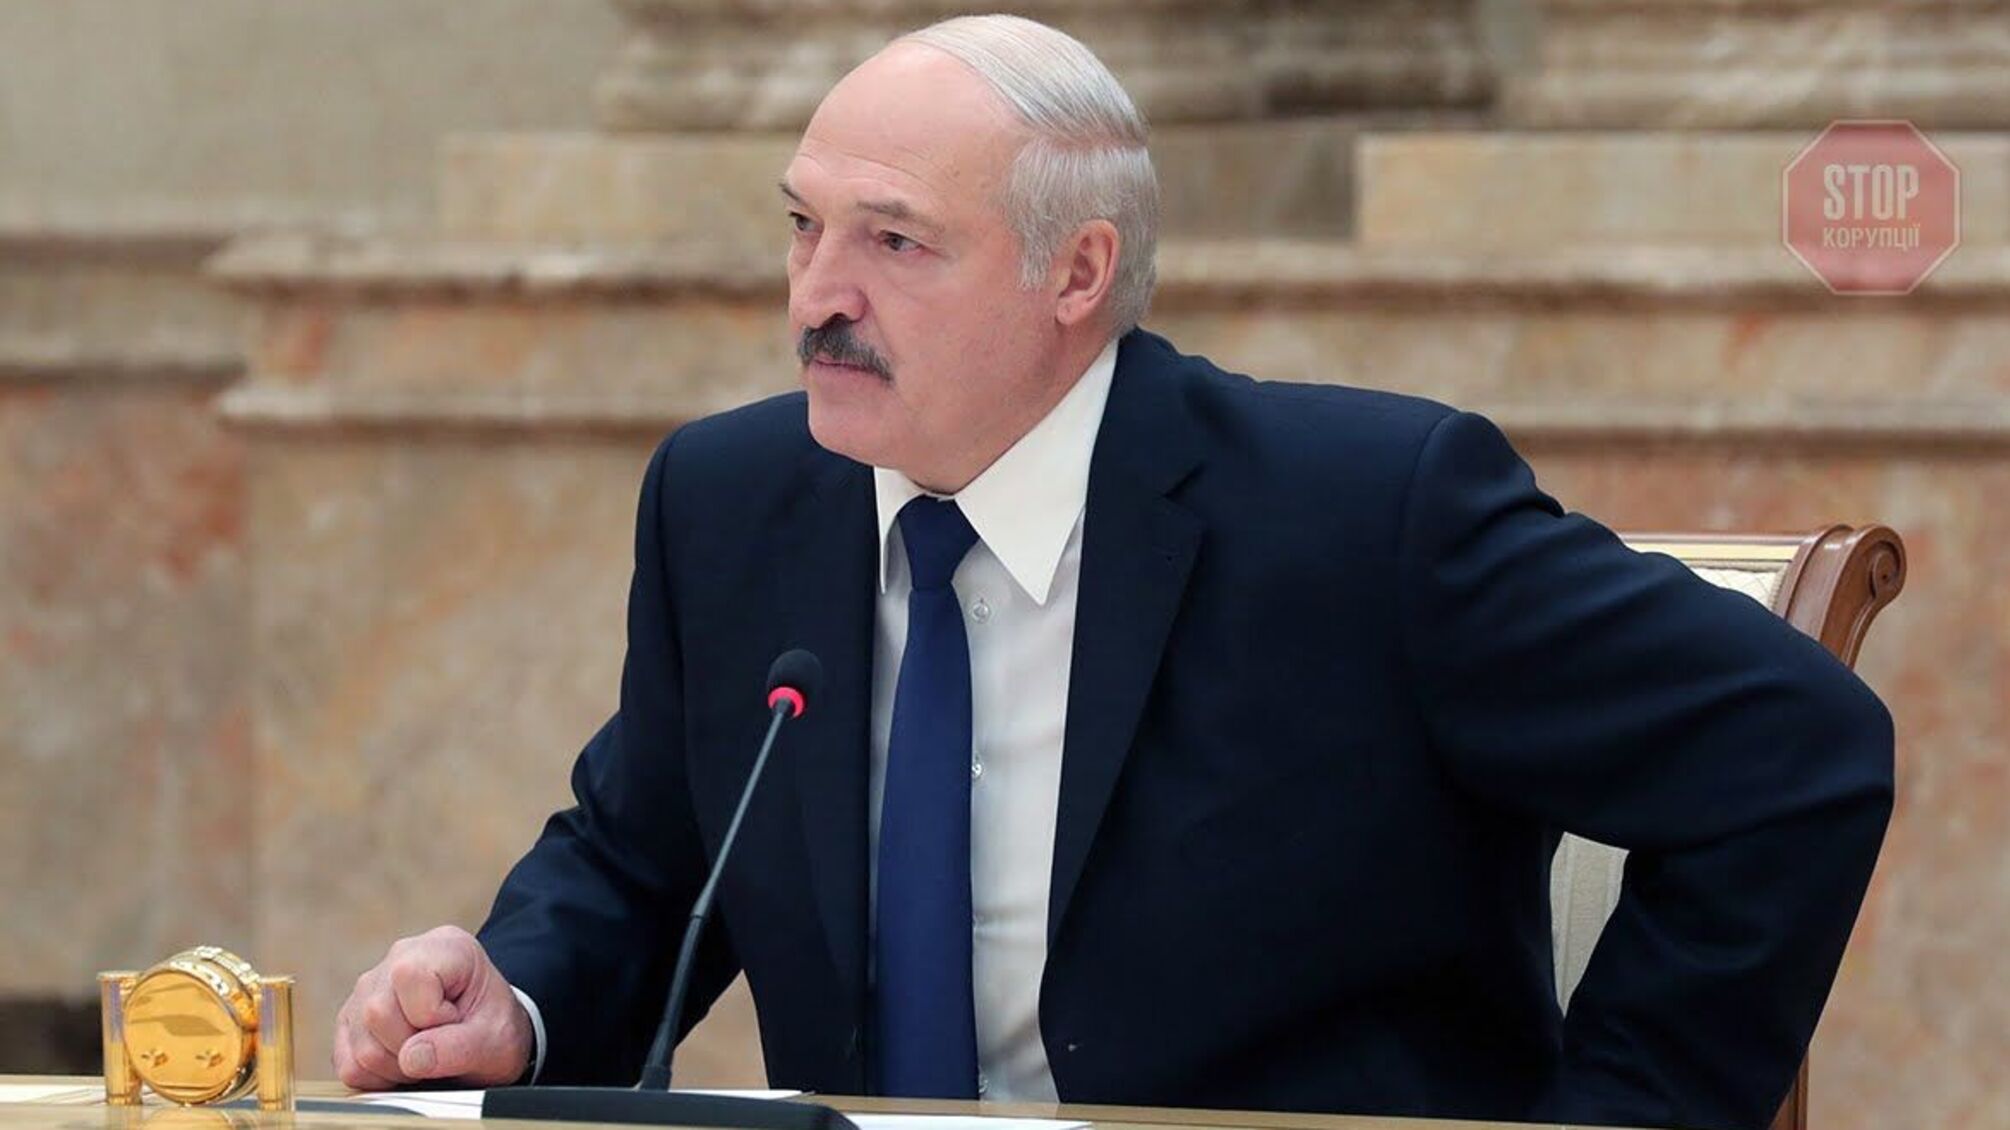 Контрабандні цигарки та продукція без сертифікатів: Журналісти Nexta опублікували нове розслідування про Лукашенка